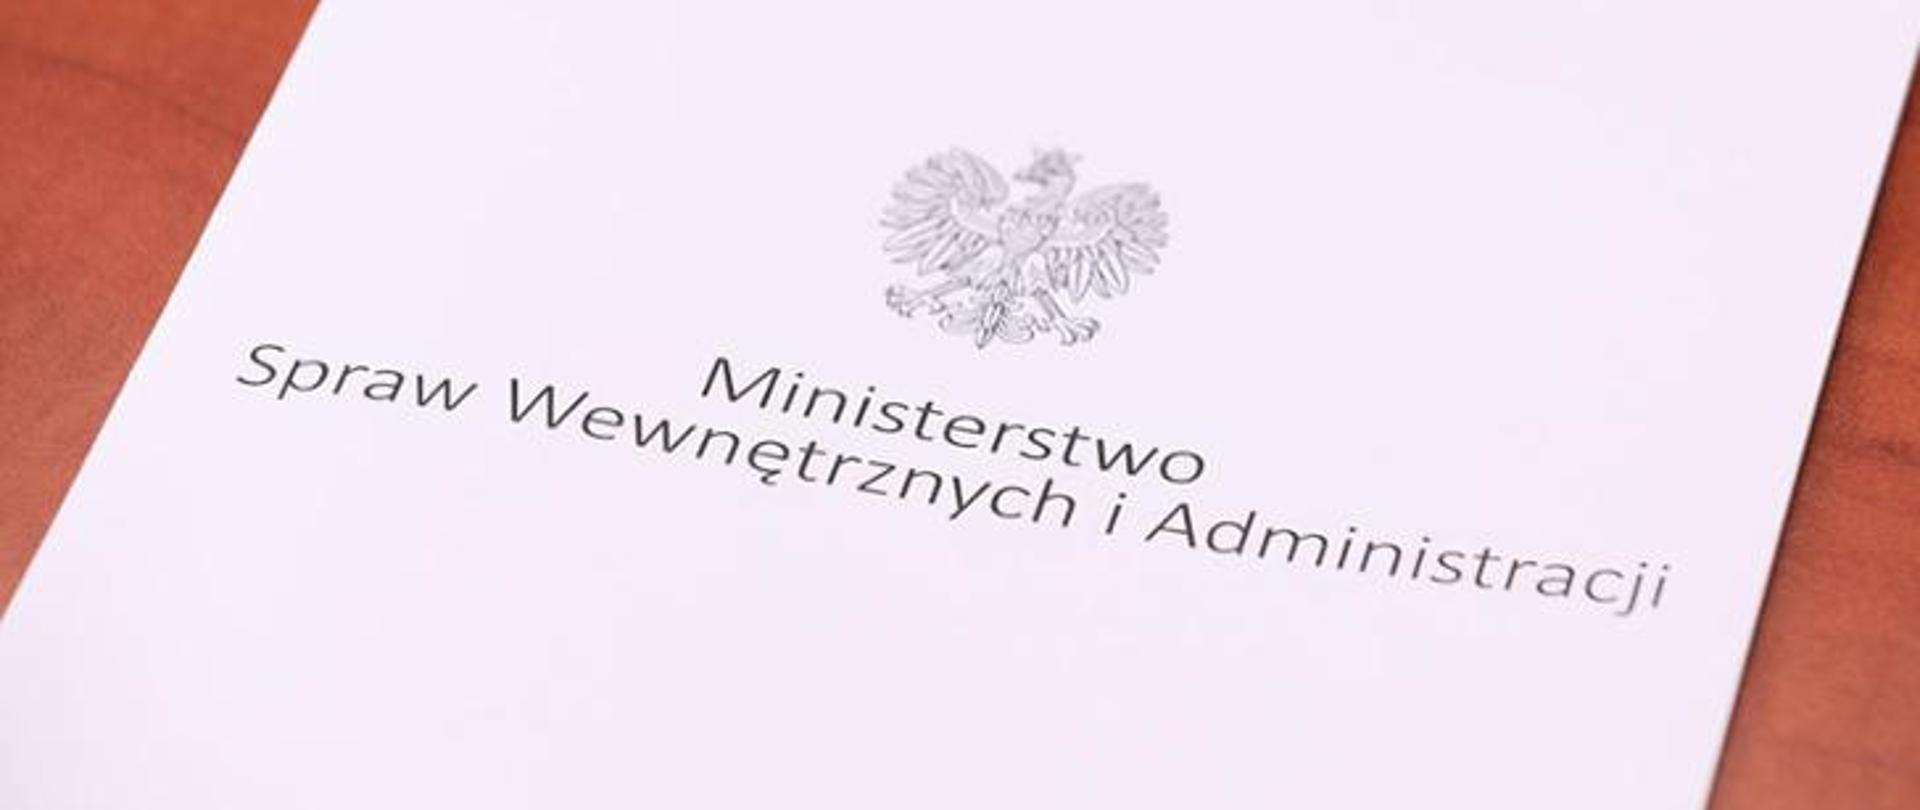 Biała teczka z orzełkiem i napisem: Ministerstwo Spraw Wewnętrznych i Administracji